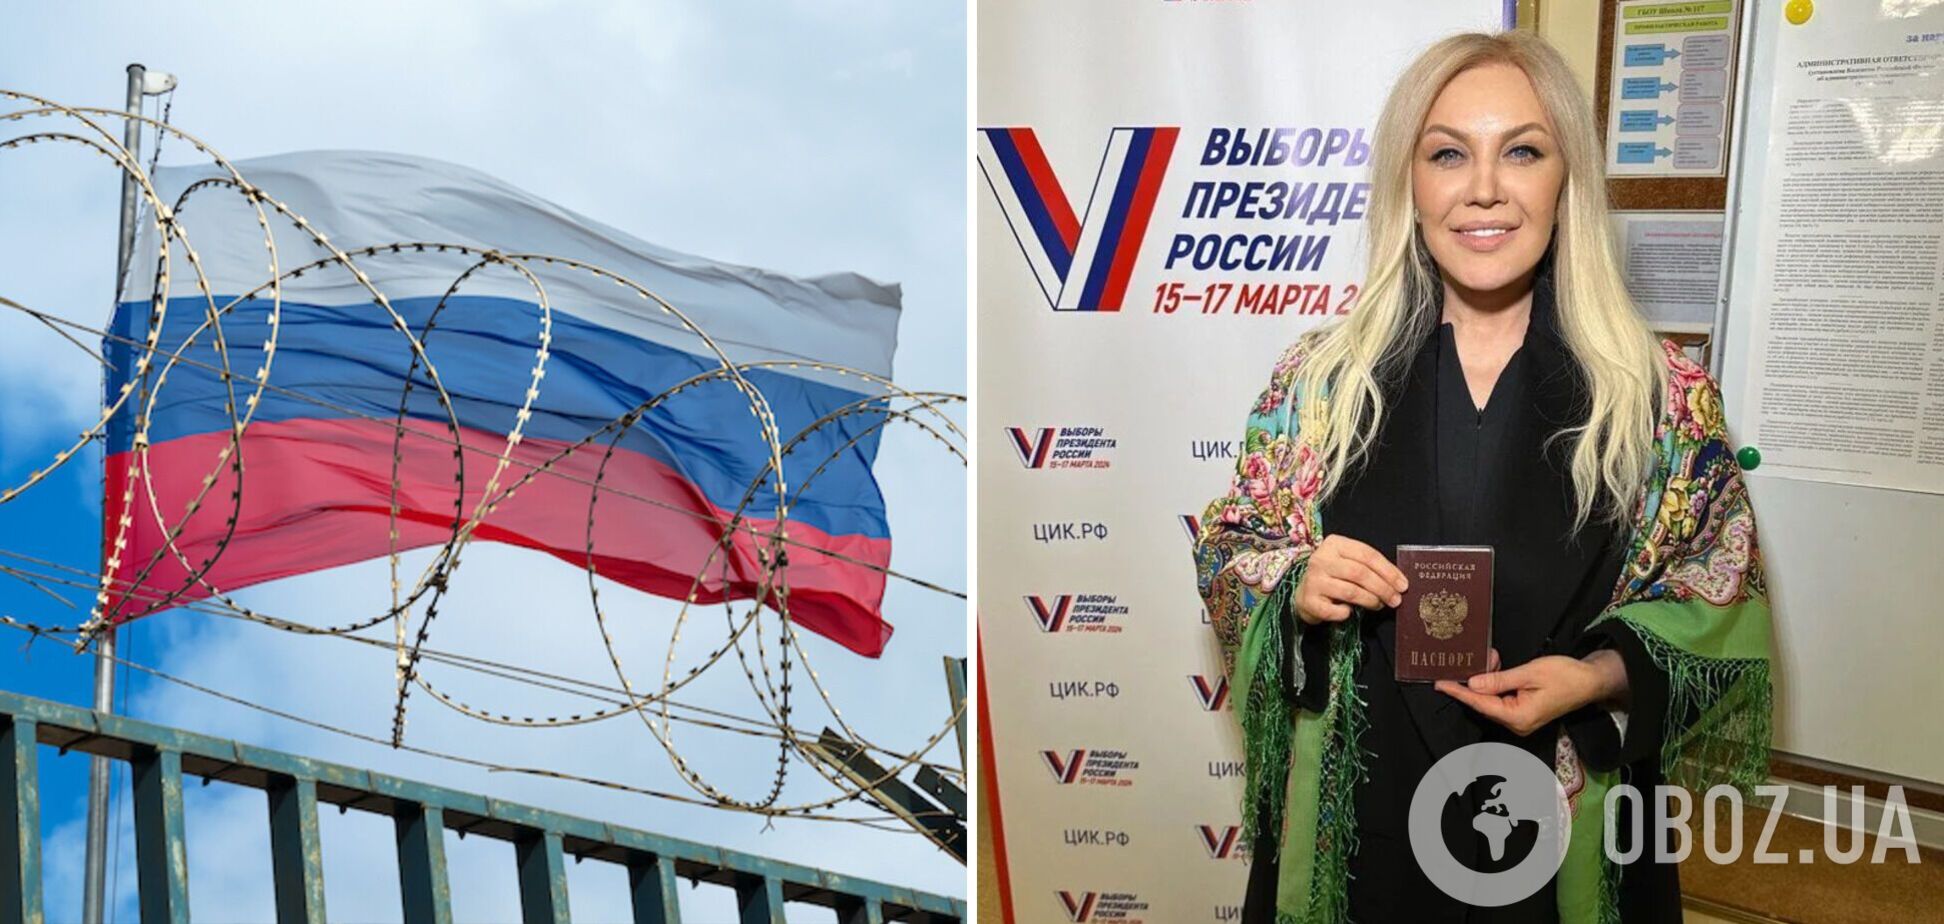 Таїсія Повалій, яка отримала російський паспорт, на росТБ поспівчувала українцям і похвалила окупантів за те, що її 'врятували'